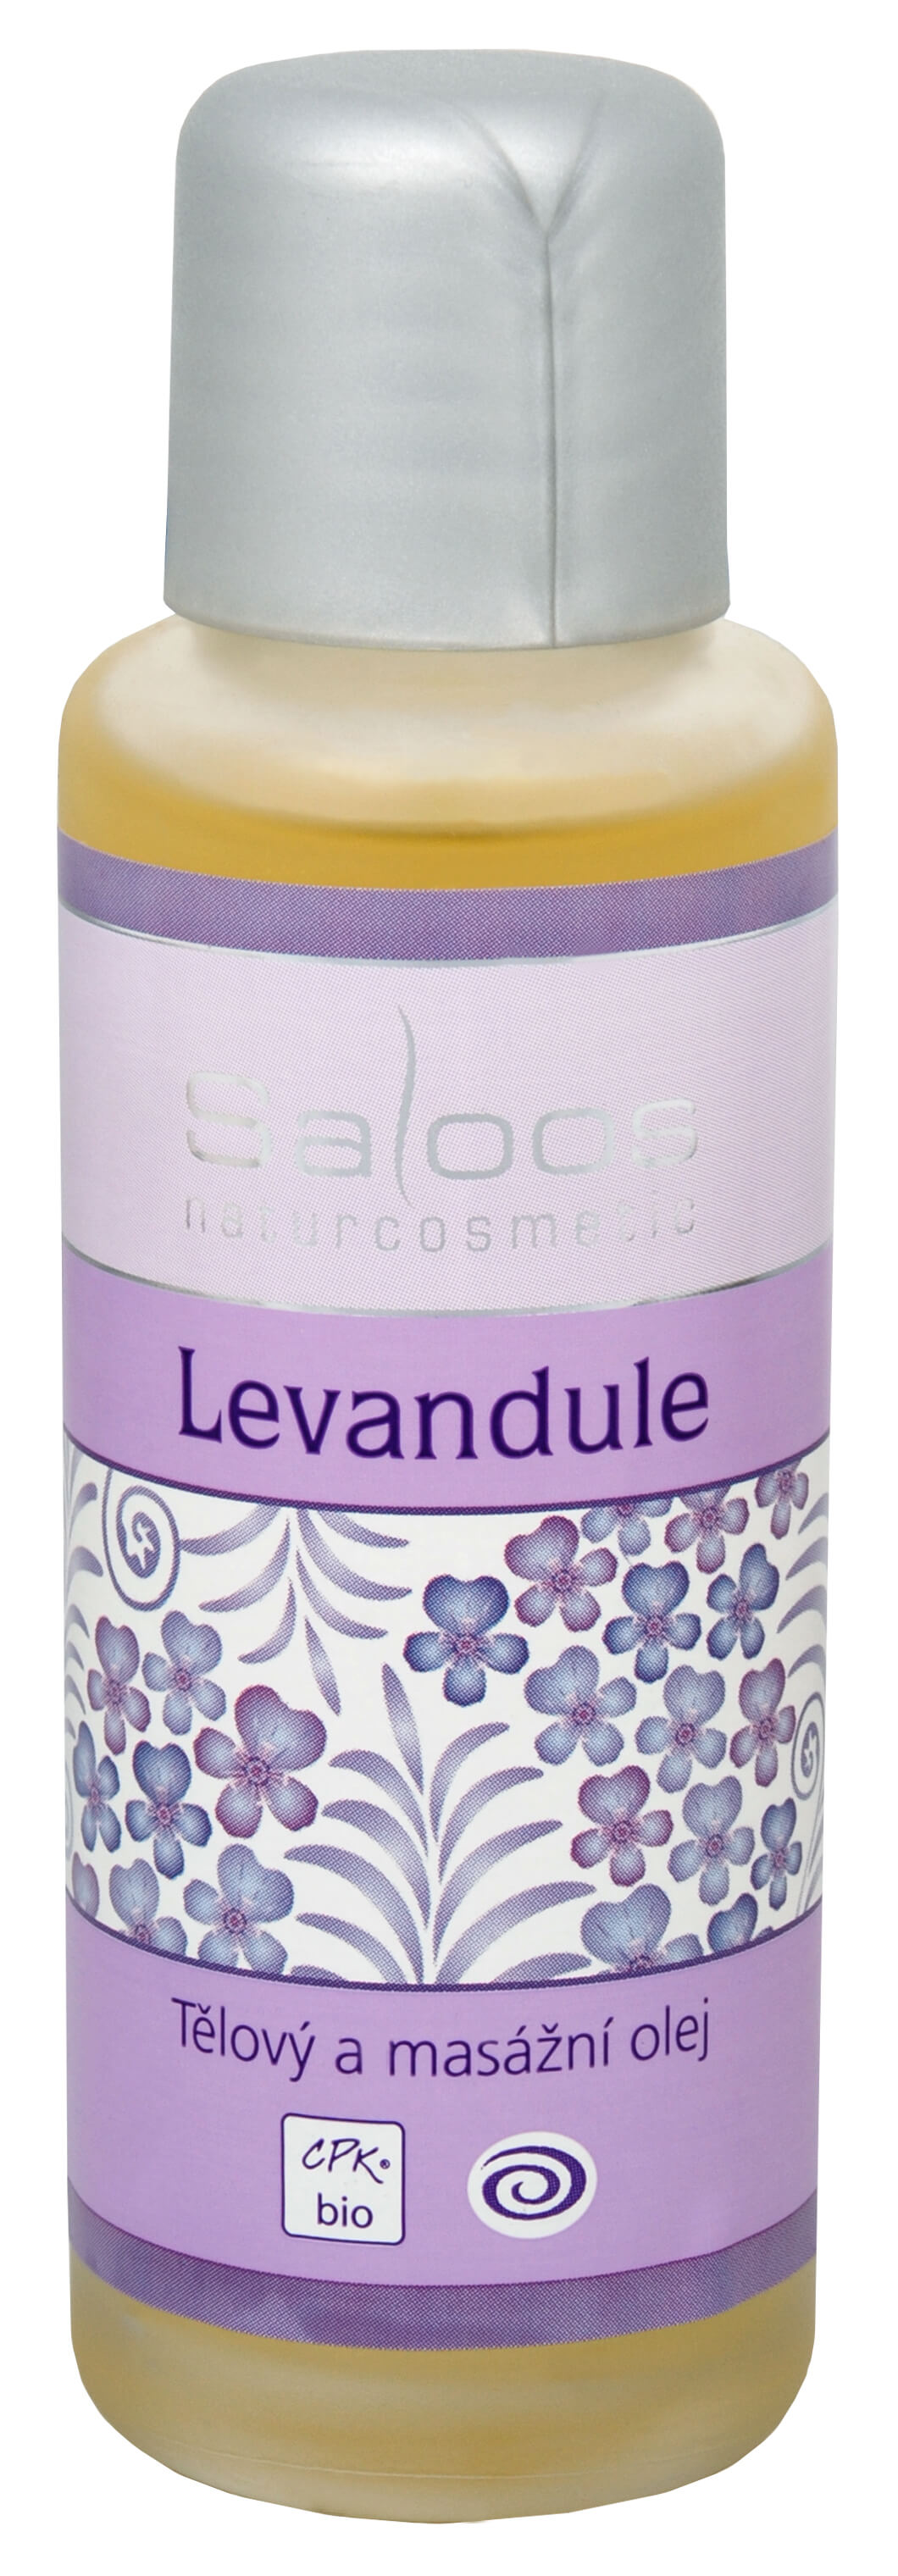 Zobrazit detail výrobku Saloos Bio tělový a masážní olej - Levandule 125 ml + 2 měsíce na vrácení zboží